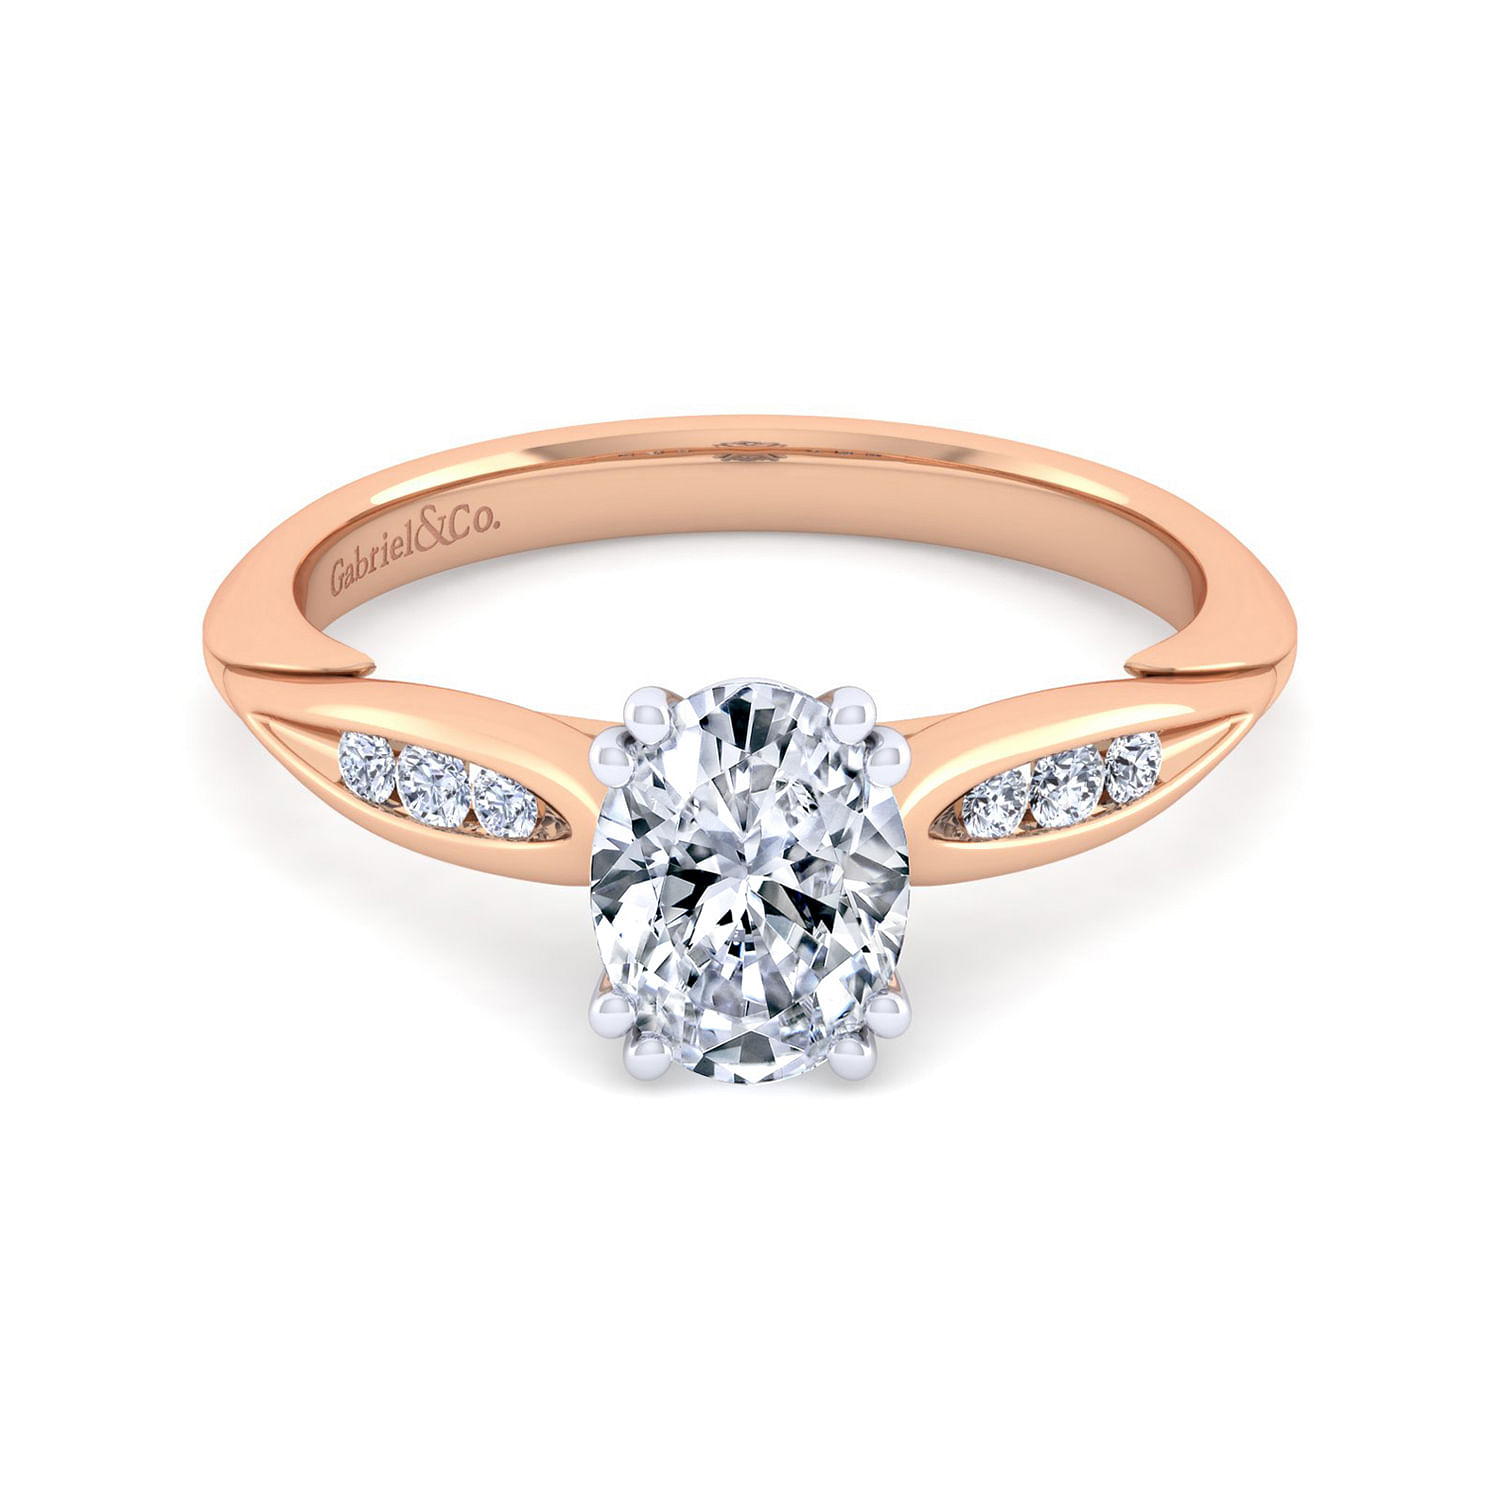 Quinn - 14K White-Rose Gold Oval Diamond Engagement Ring